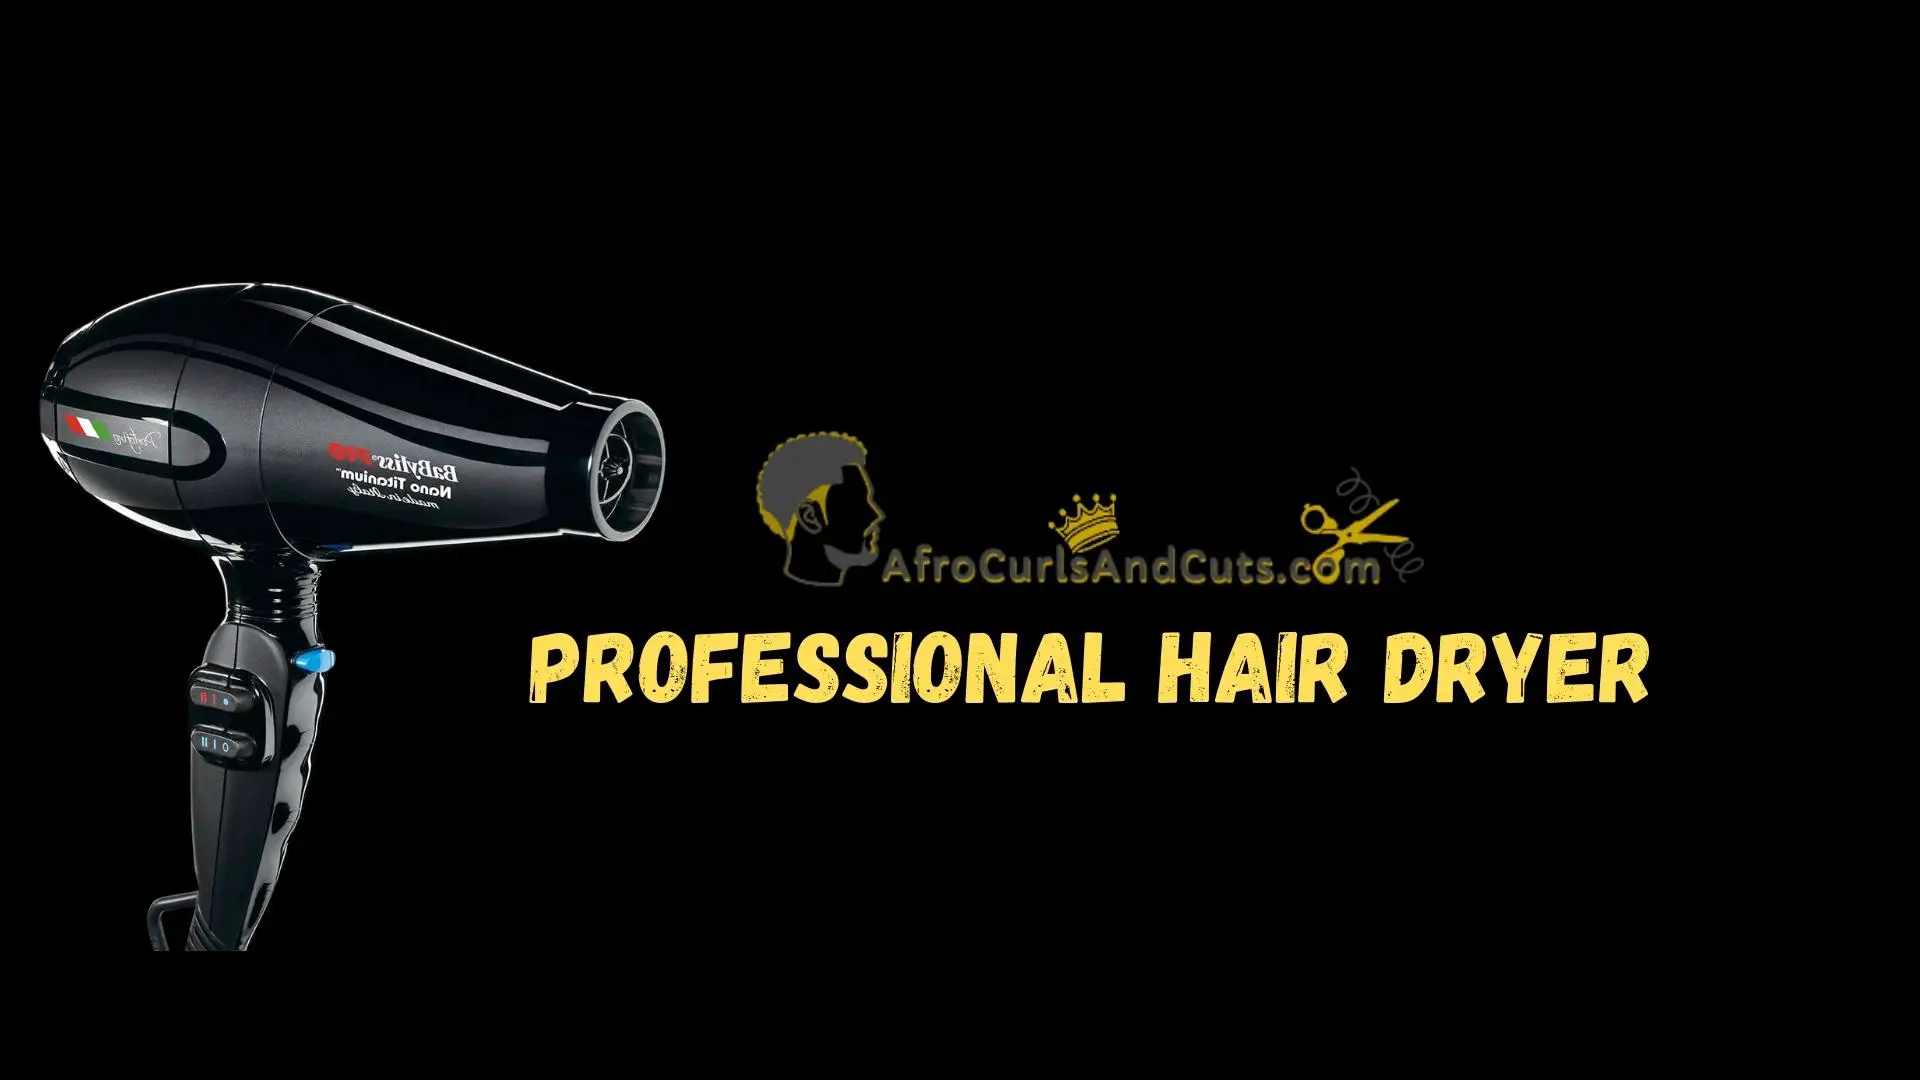 Professional Hair Dryer for barber kit